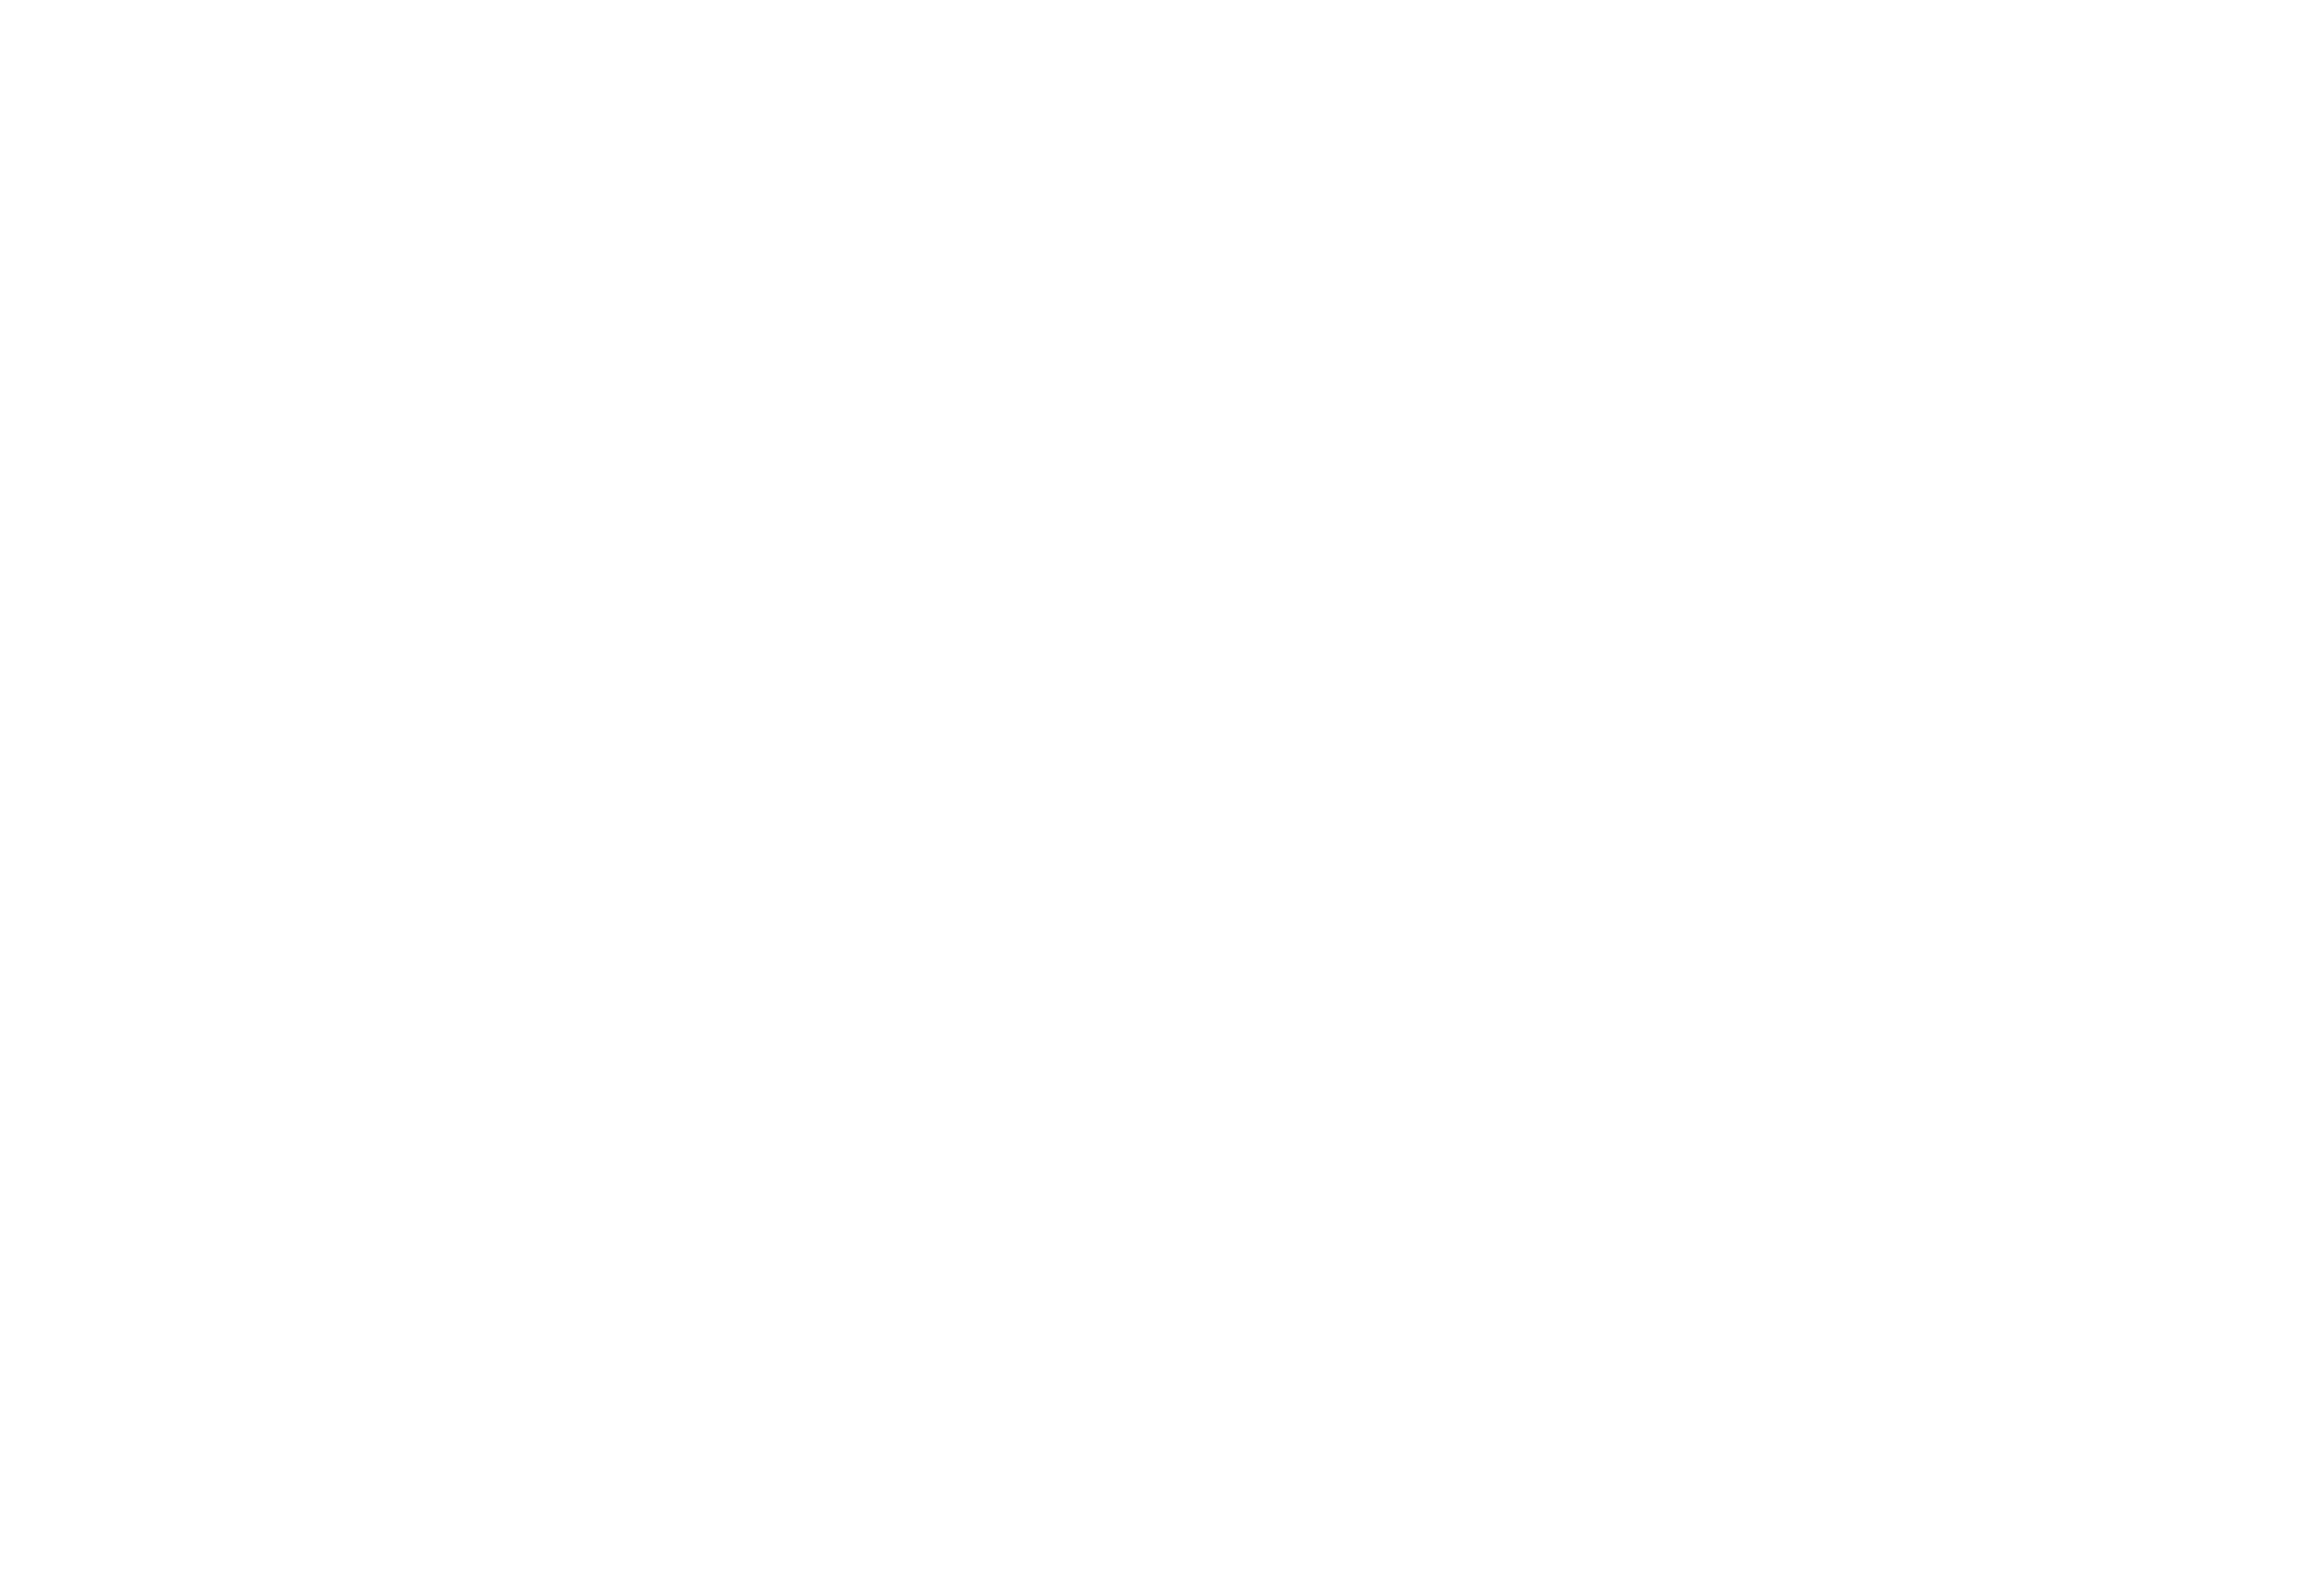 Joe Bob's Bar & Grill Band